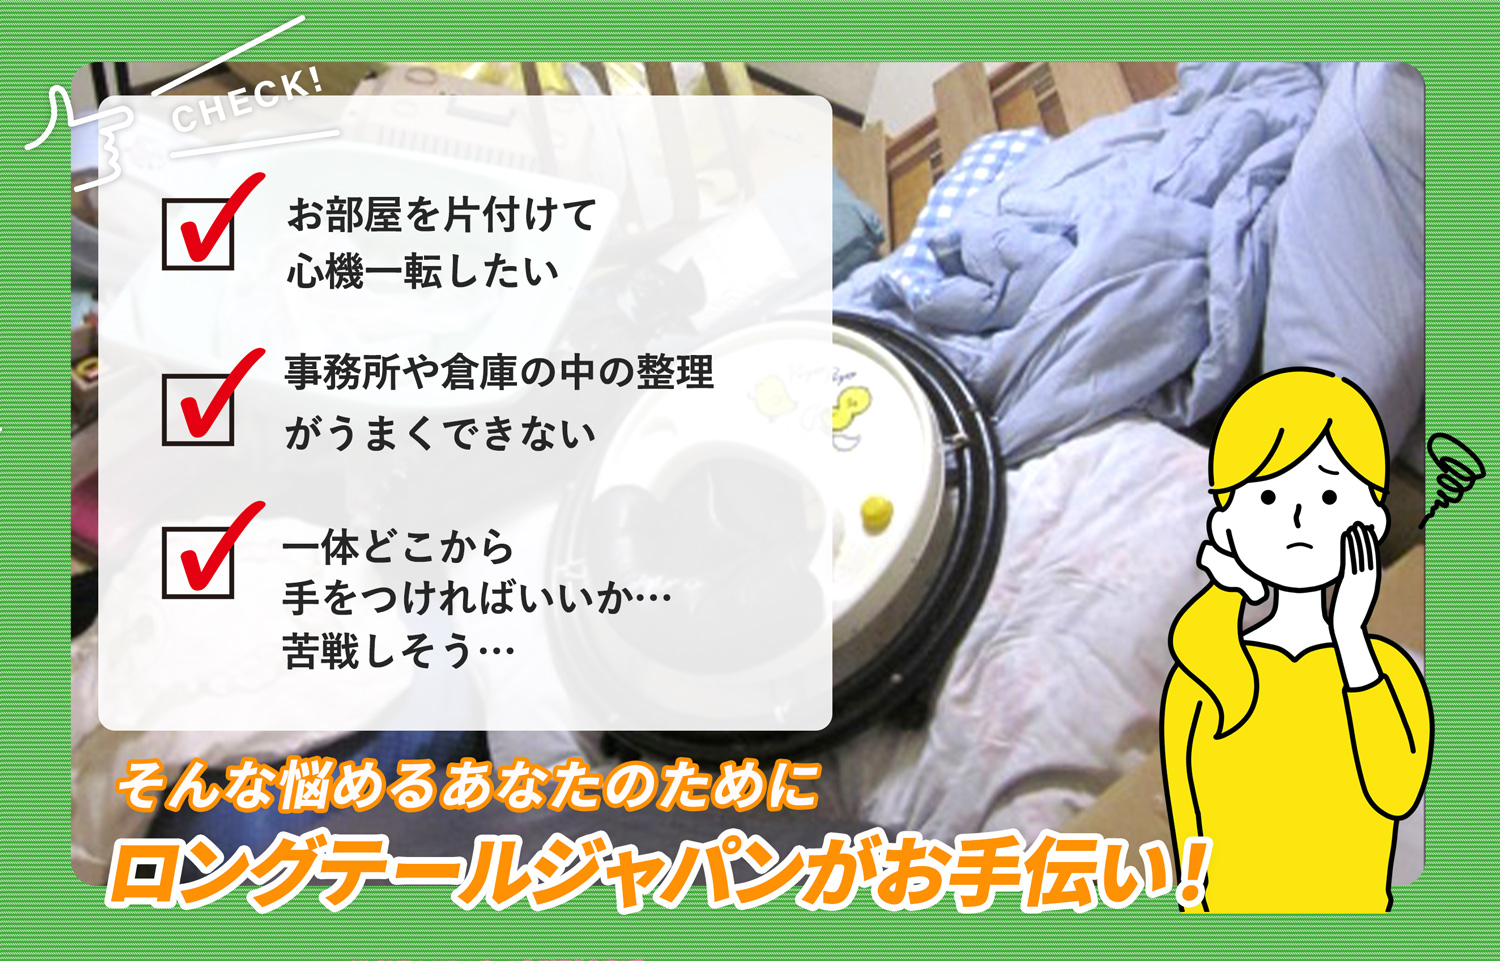 栃木市でお部屋の中から店舗、事務所、倉庫まで自分達で片付けられない場合はお部屋の片付け隊がやらせていただきます。